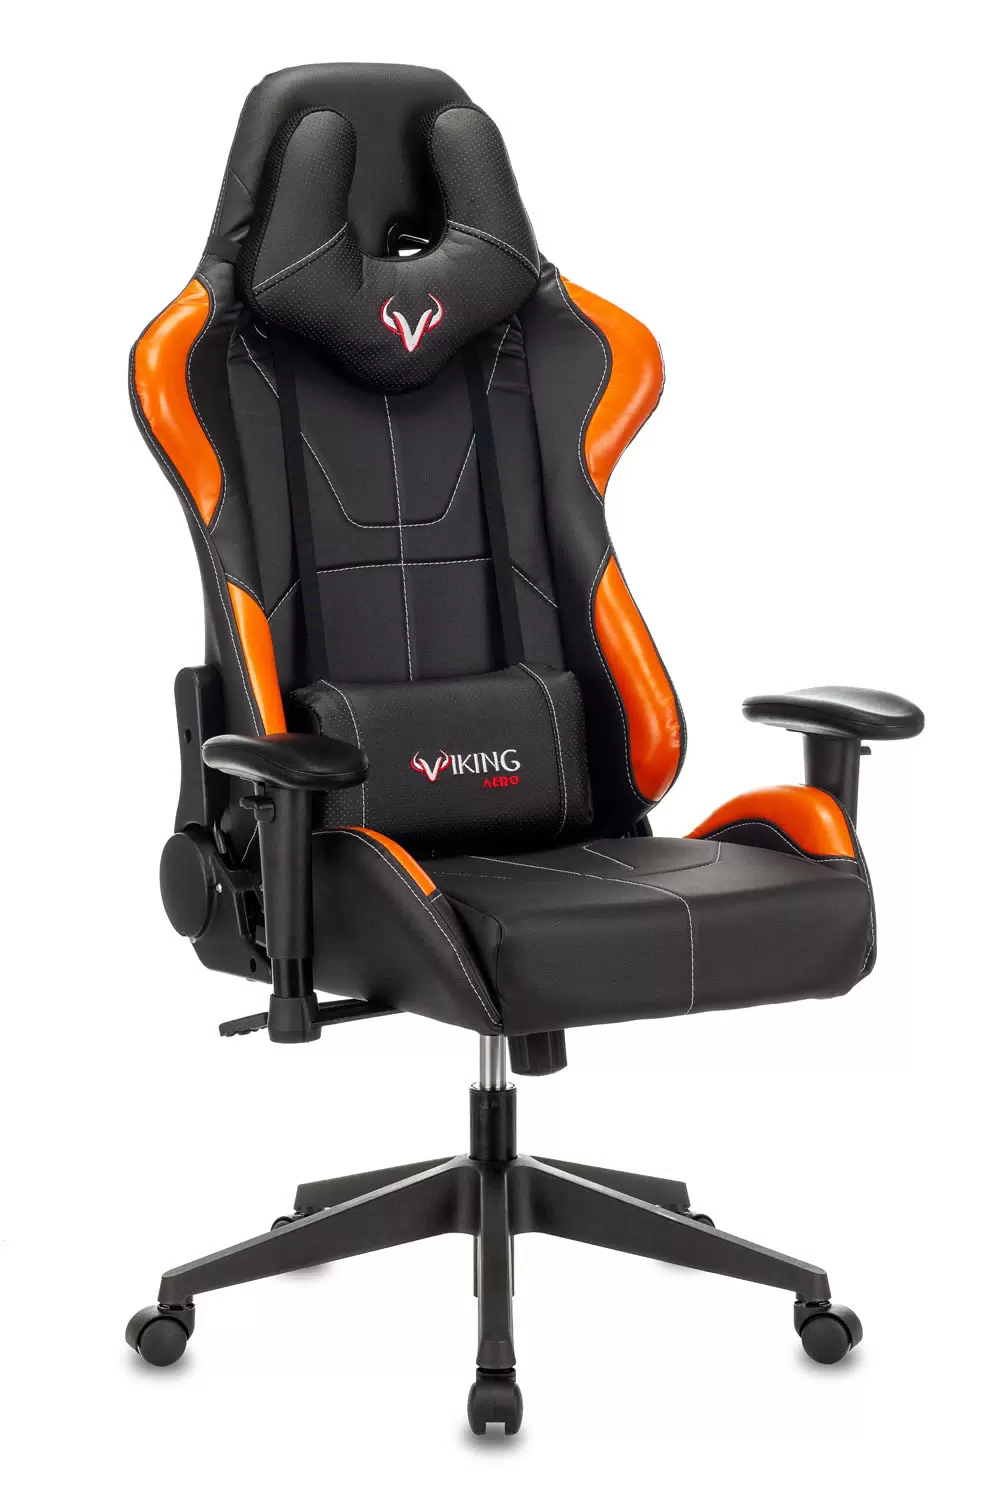 Кресло игровое ZOMBIE VIKING 5 AERO, оранжевый/черный [viking 5 aero orange] - VLARNIKA в Донецке